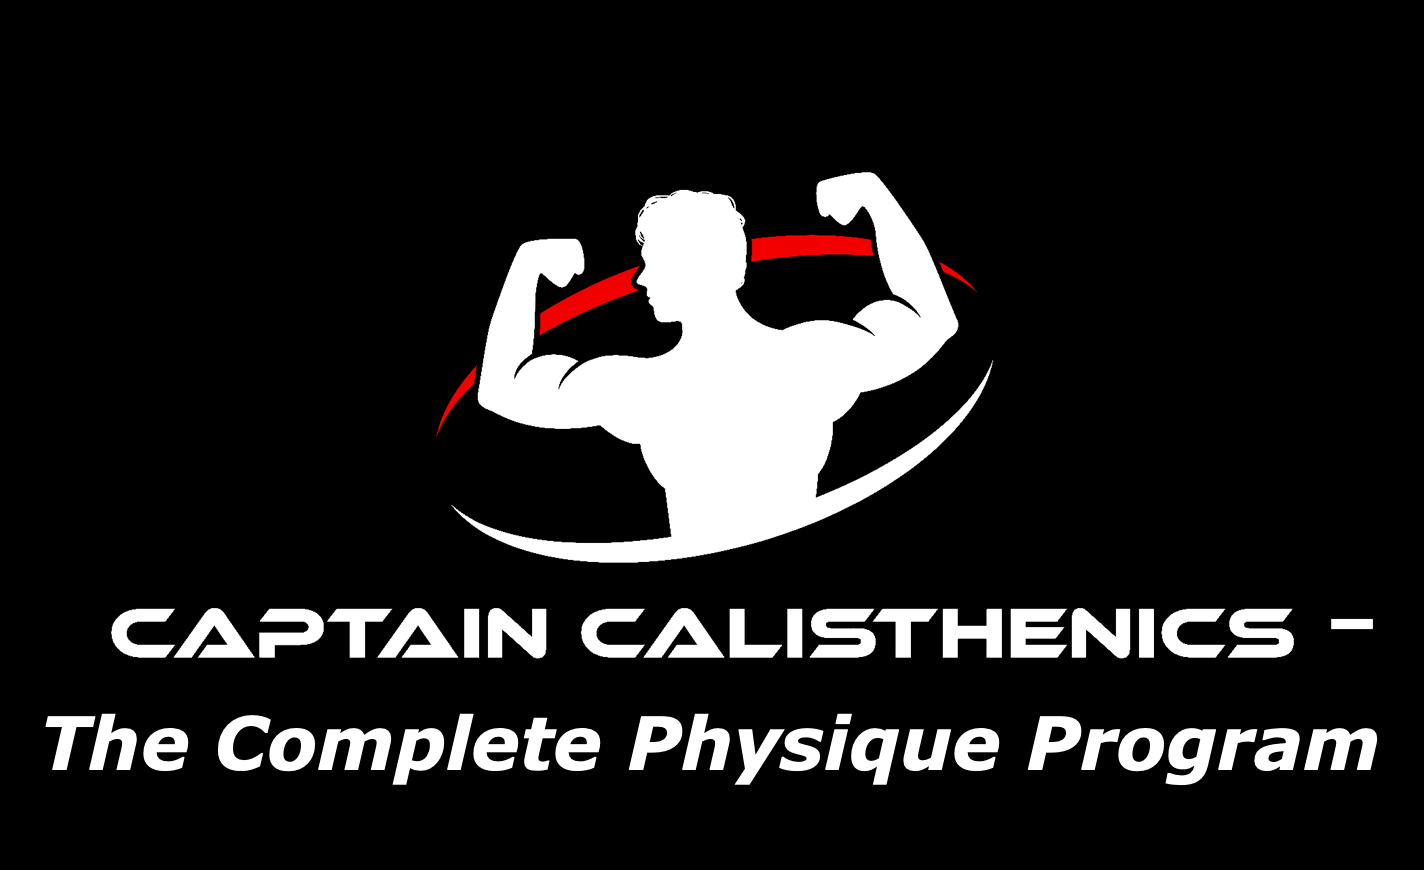 The Captain Calisthenics Physique Program